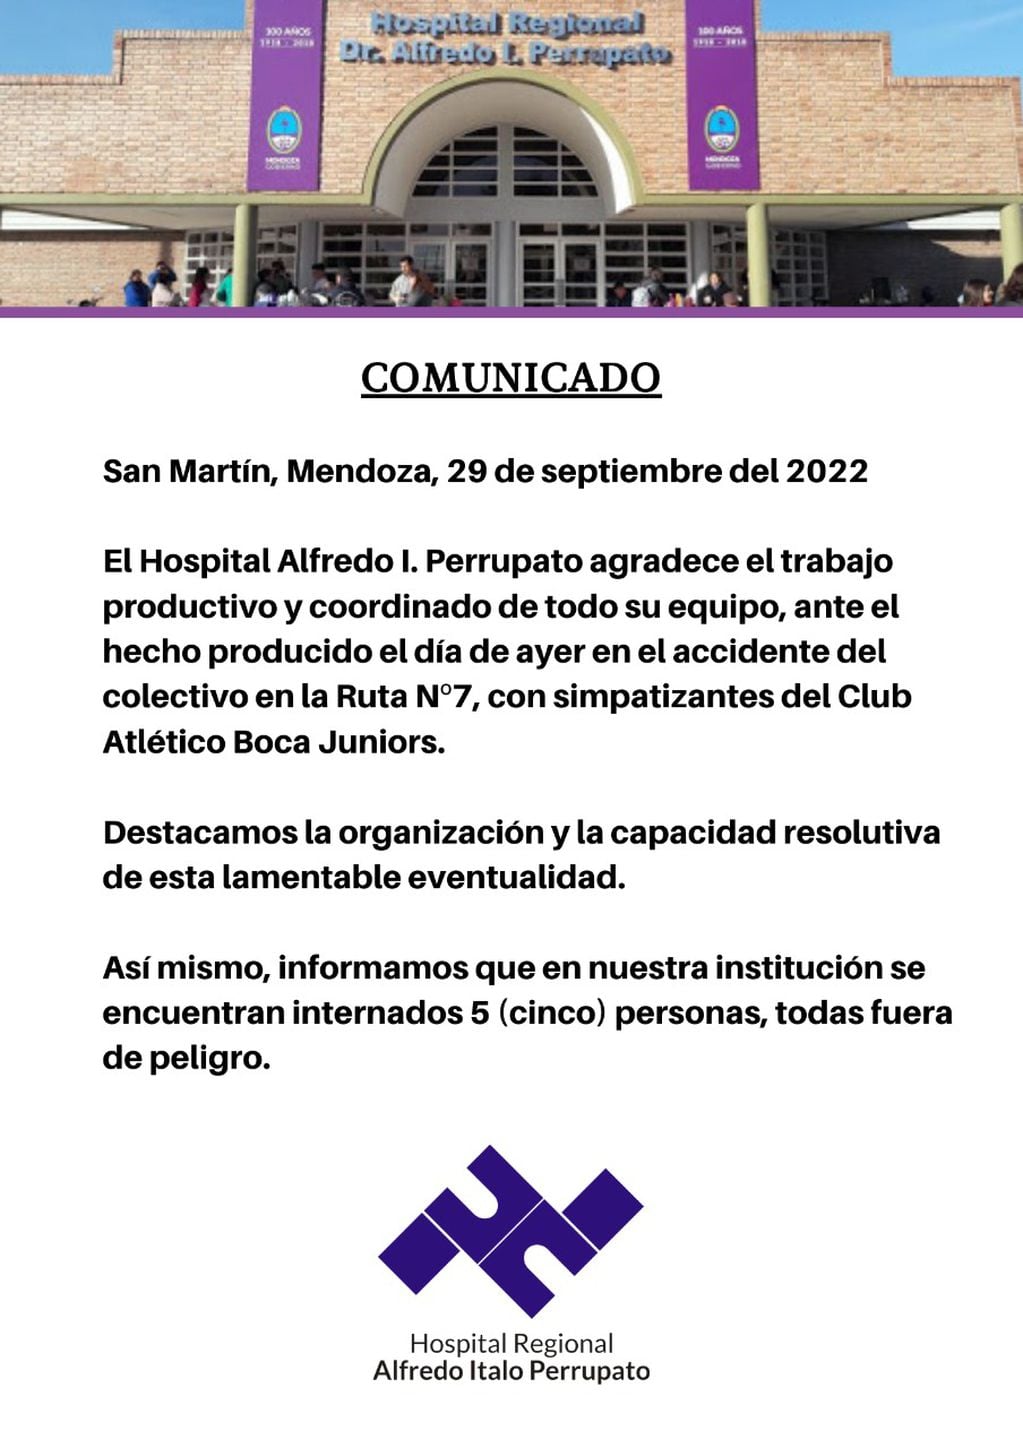 Comunicado del hospital en San Martín, Mendoza.